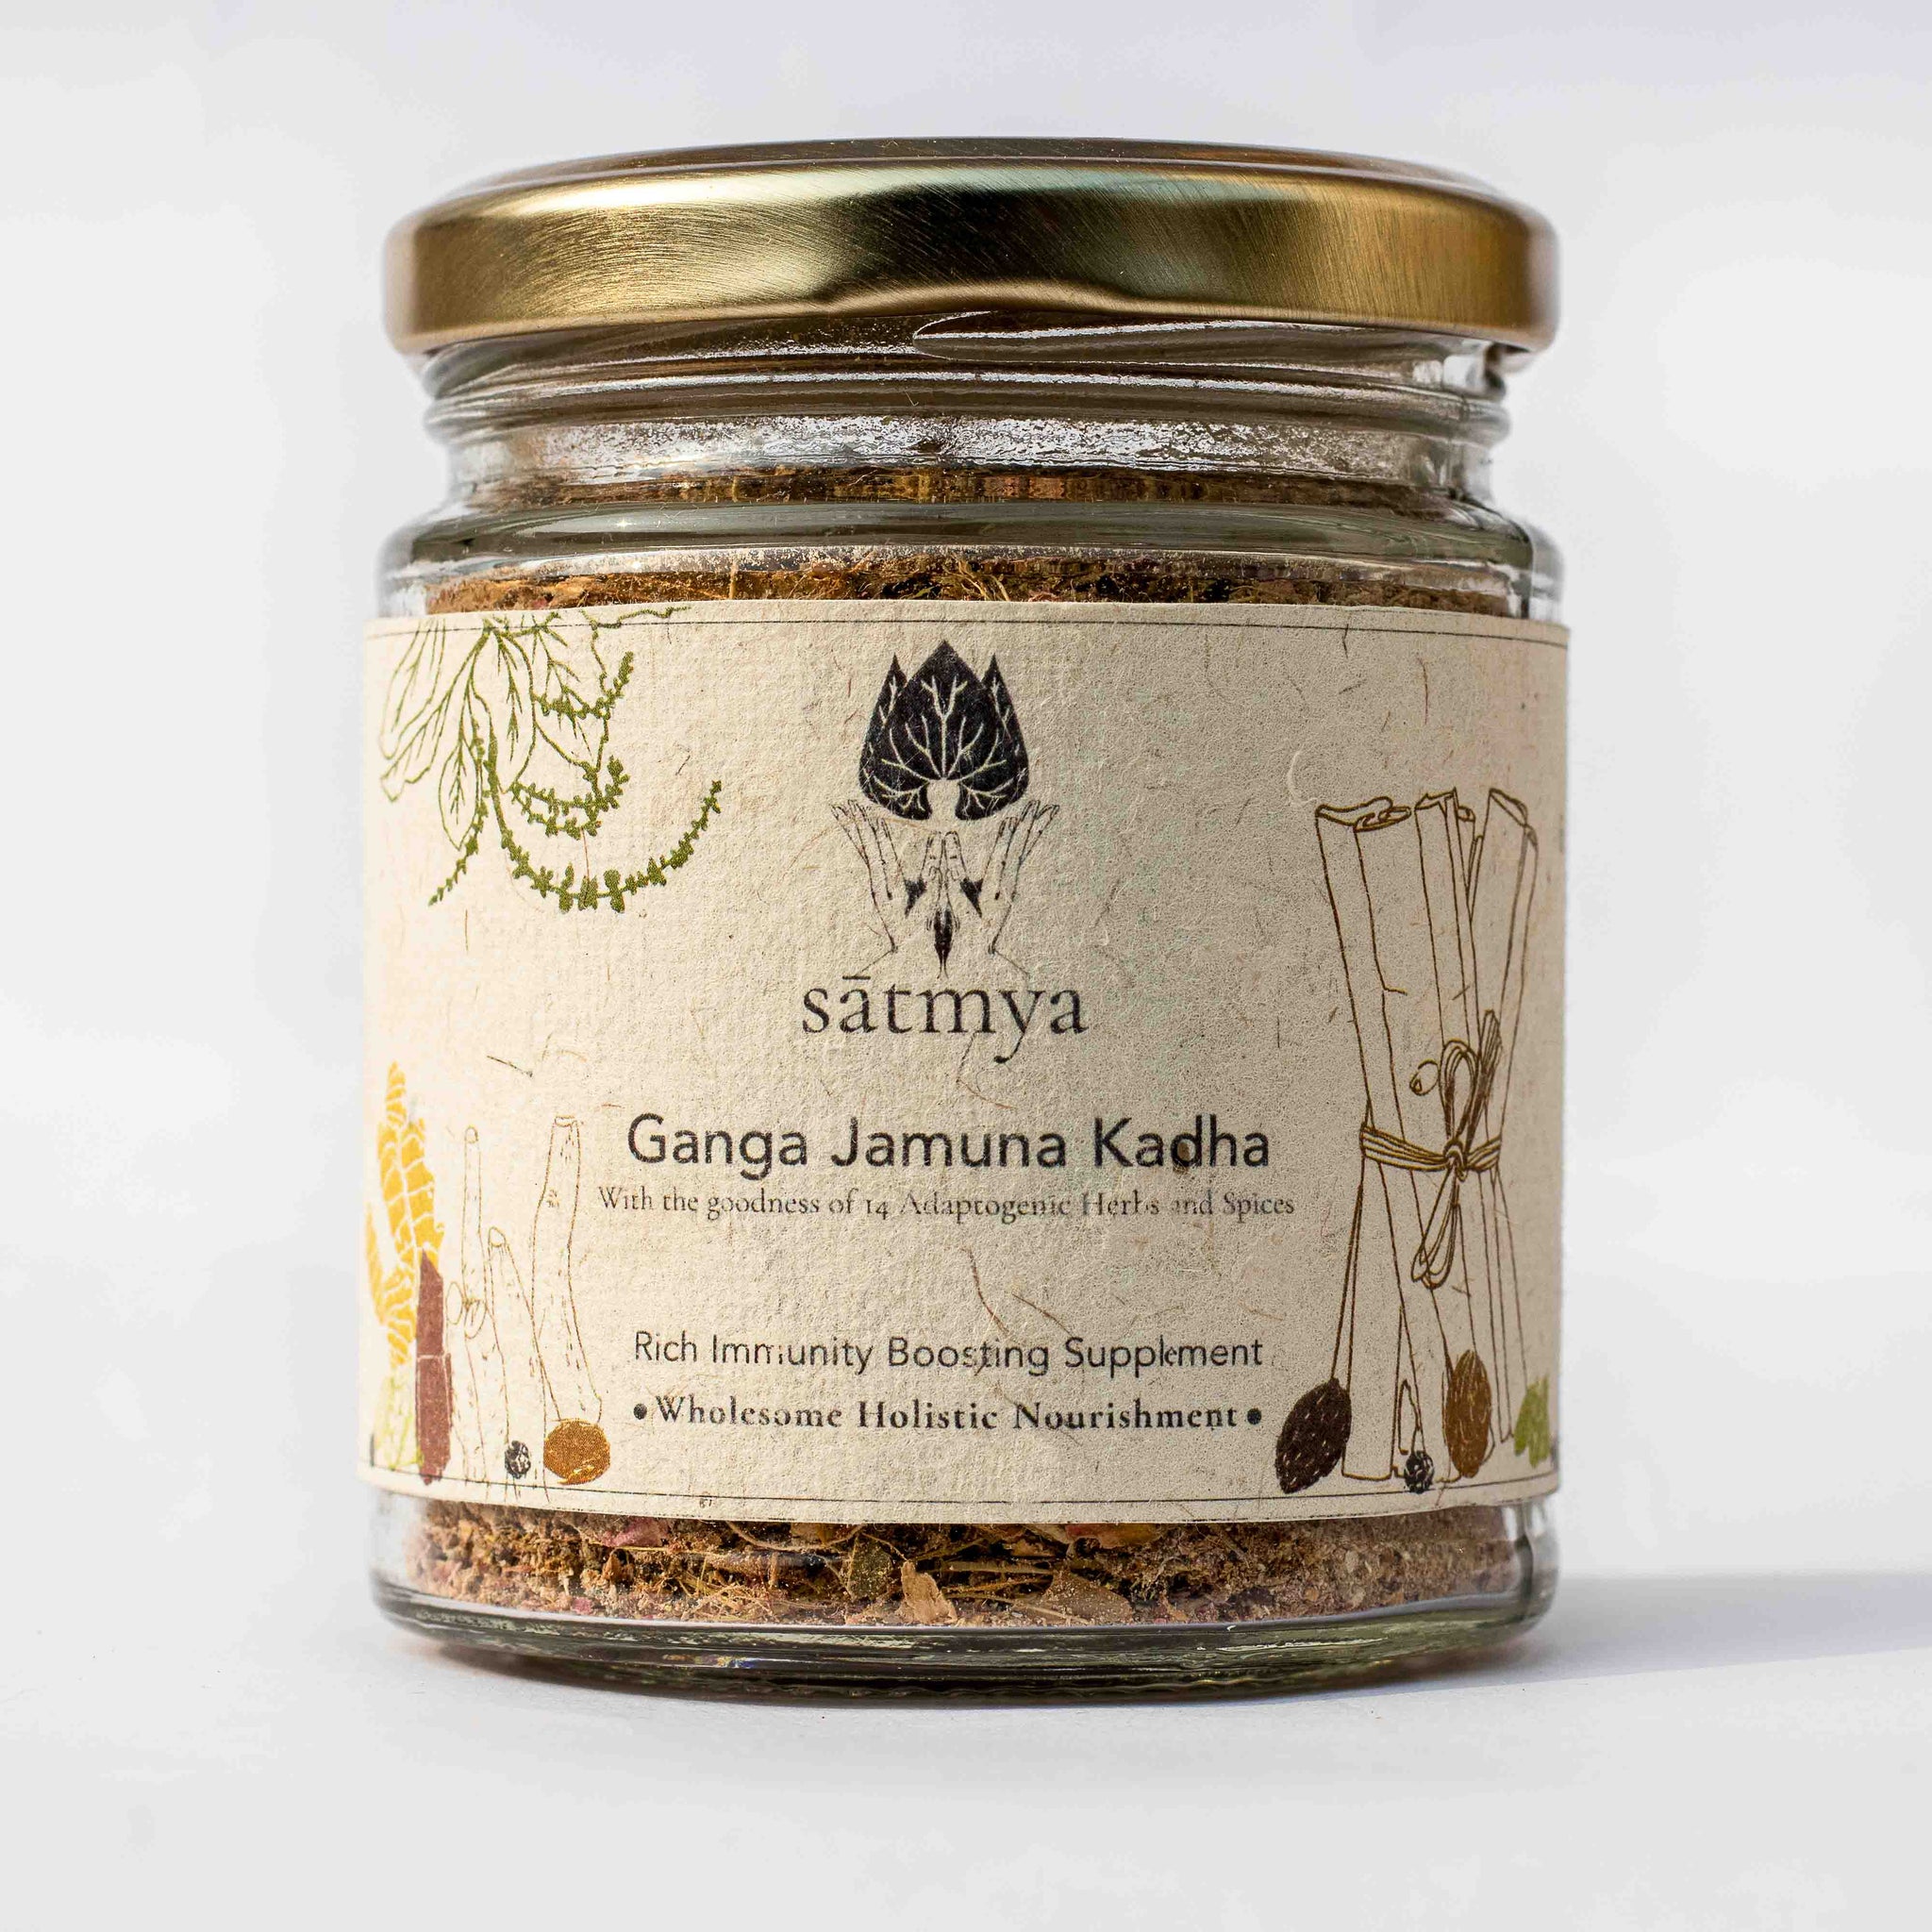 Product: Satmya Ganga Jamuna Kadha